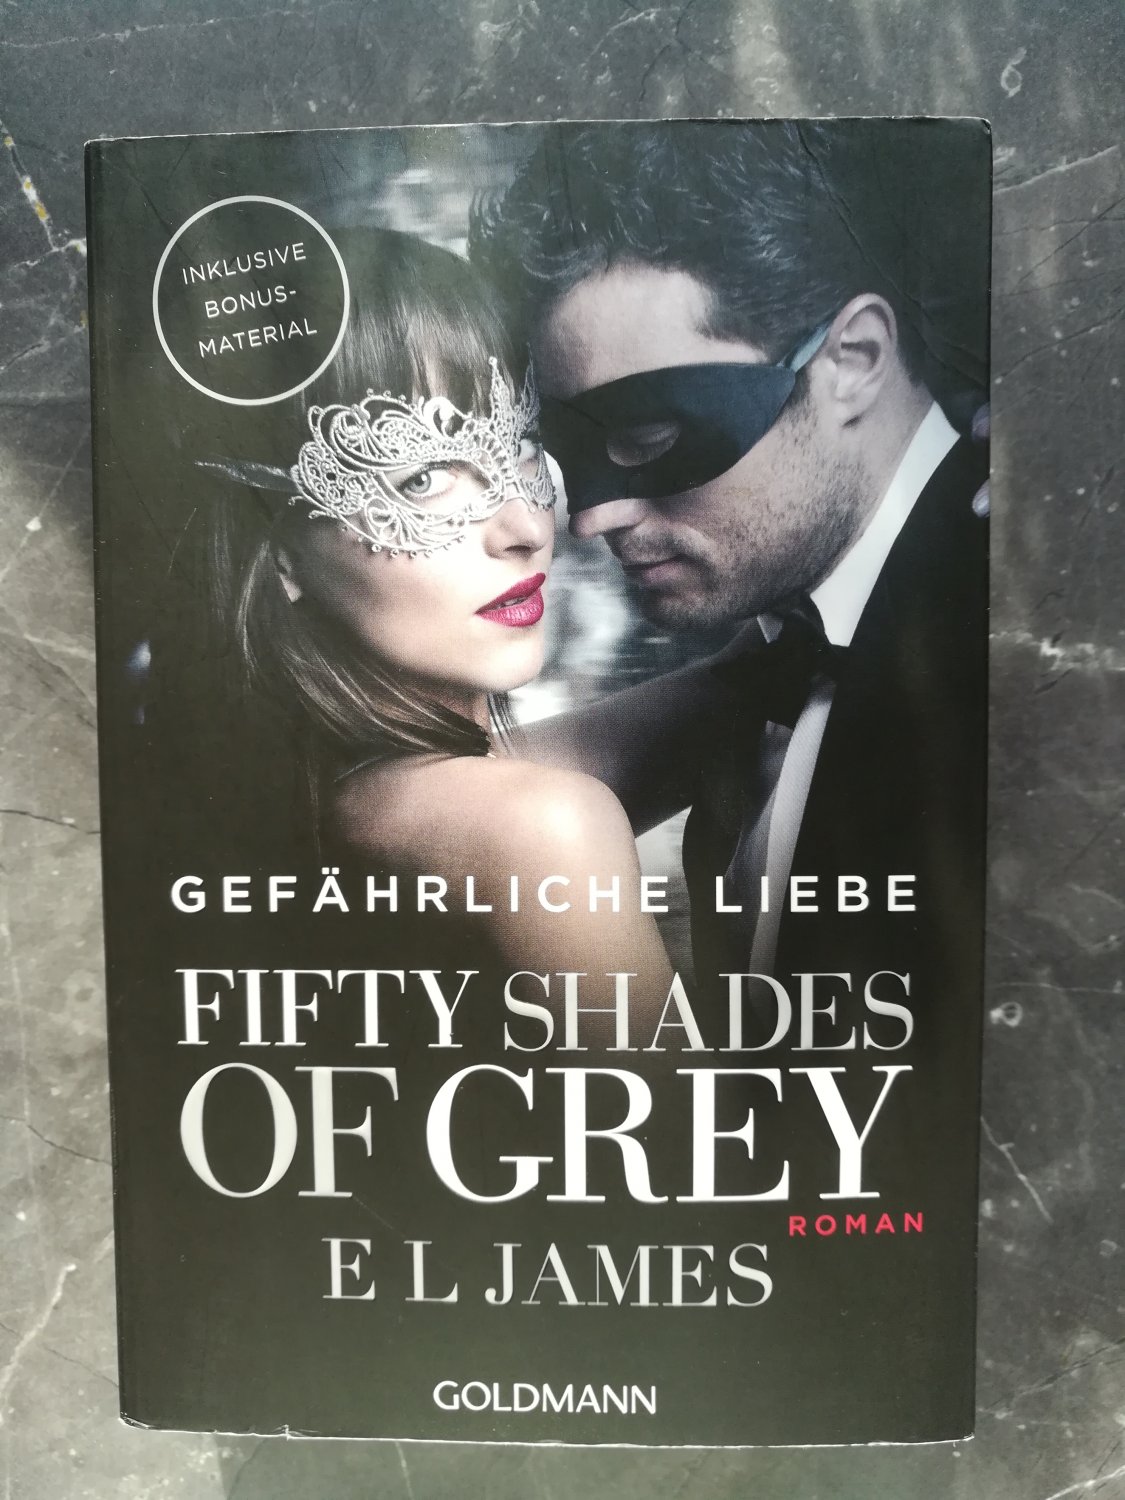 Fifty Shades Of Grey Gefahrliche Liebe Band 2 James E L Buch Gebraucht Kaufen A02nmkws01zzg